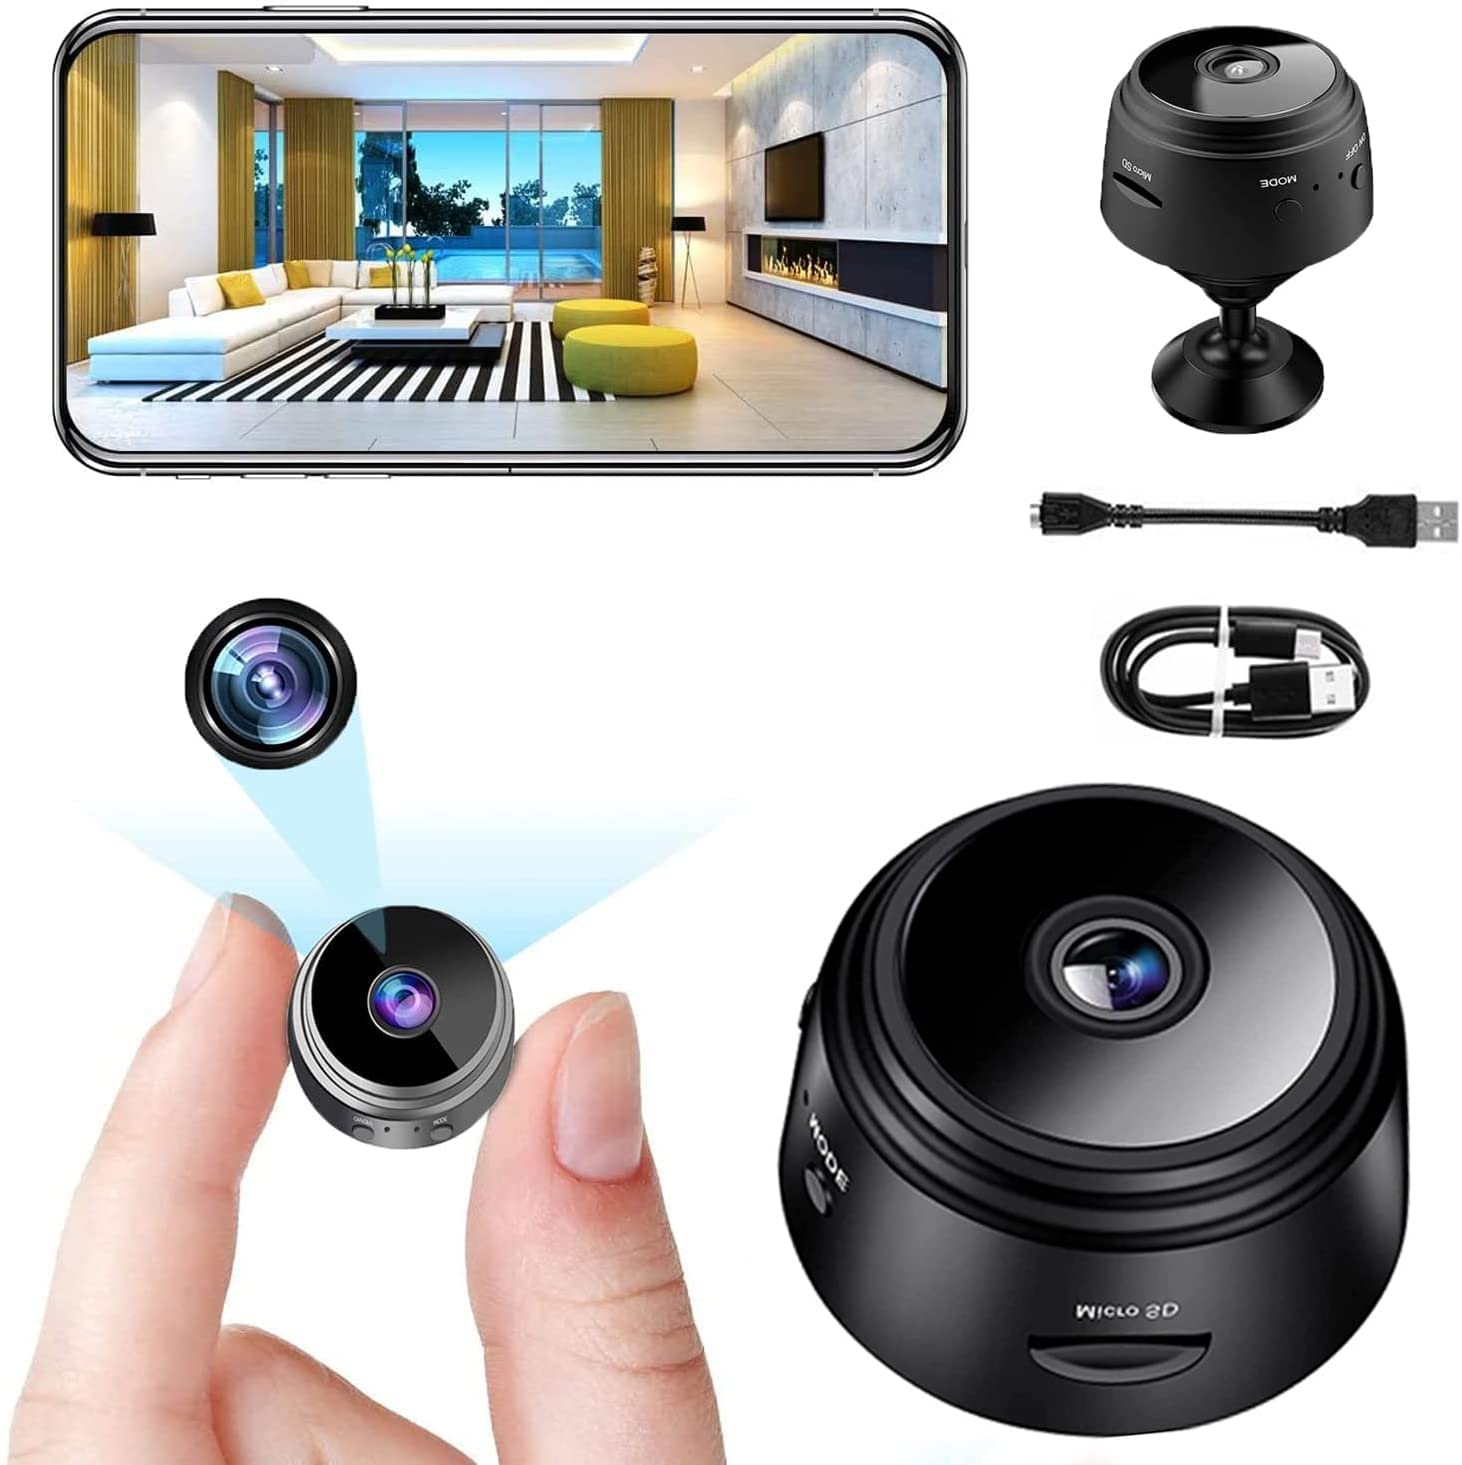 Mini caméra magnétique Wifi HD 1080p - AuBigDeal™